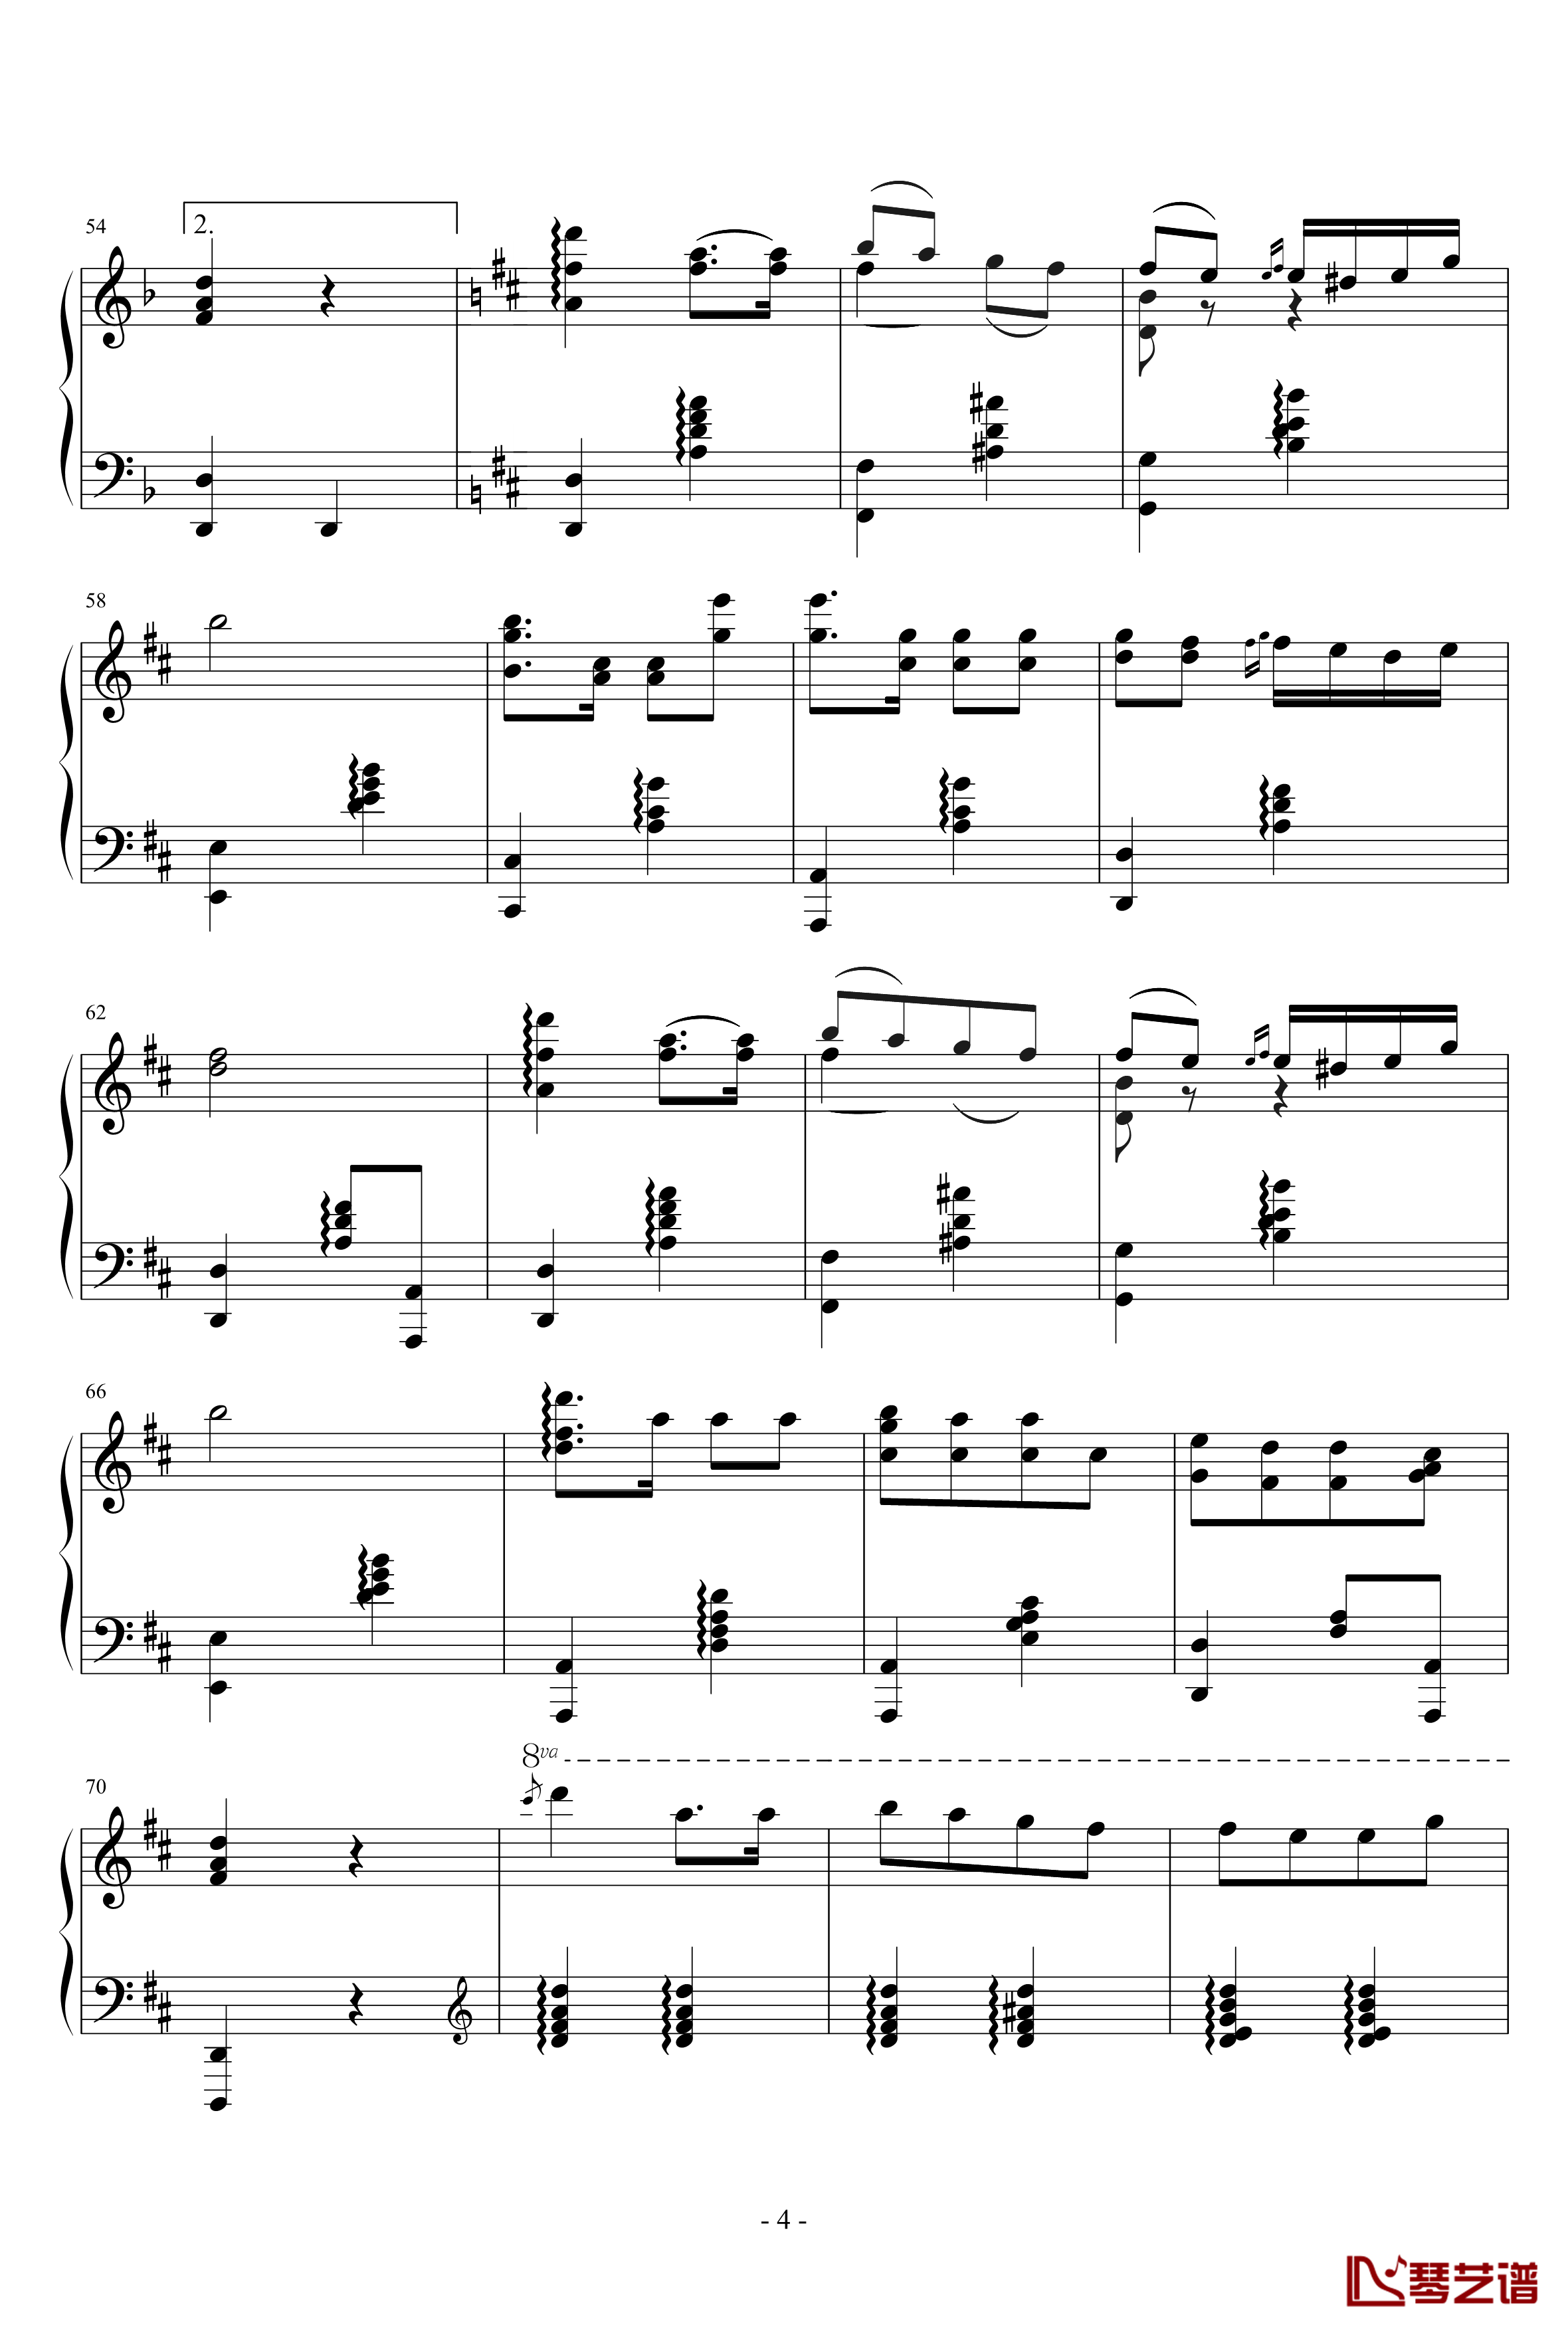 查尔达什舞曲钢琴谱-钢琴版-蒙蒂4